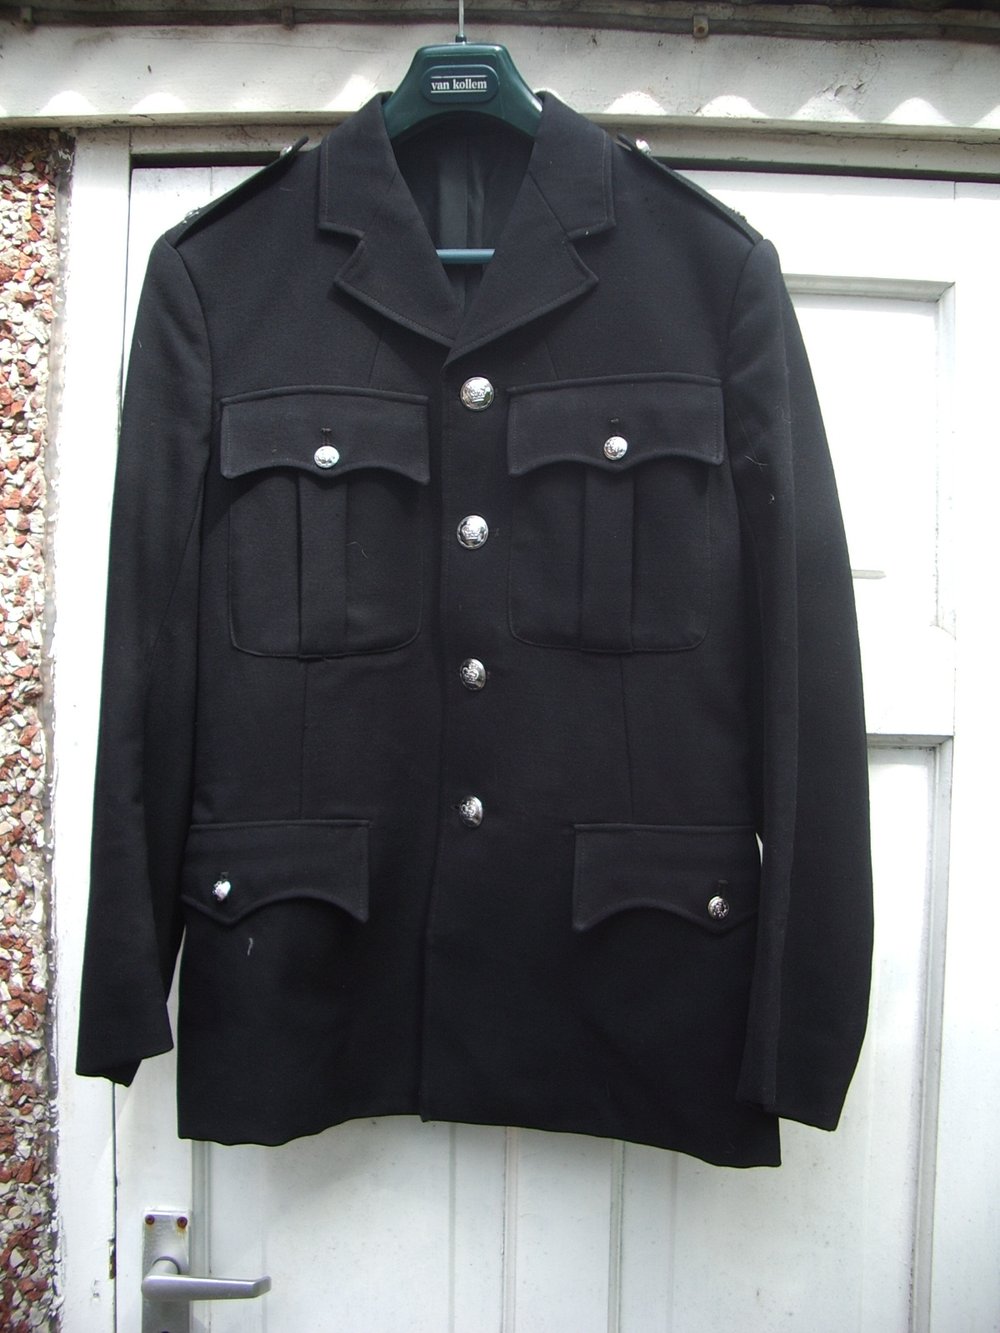  Alan Godfrey’s Police Constable uniform 